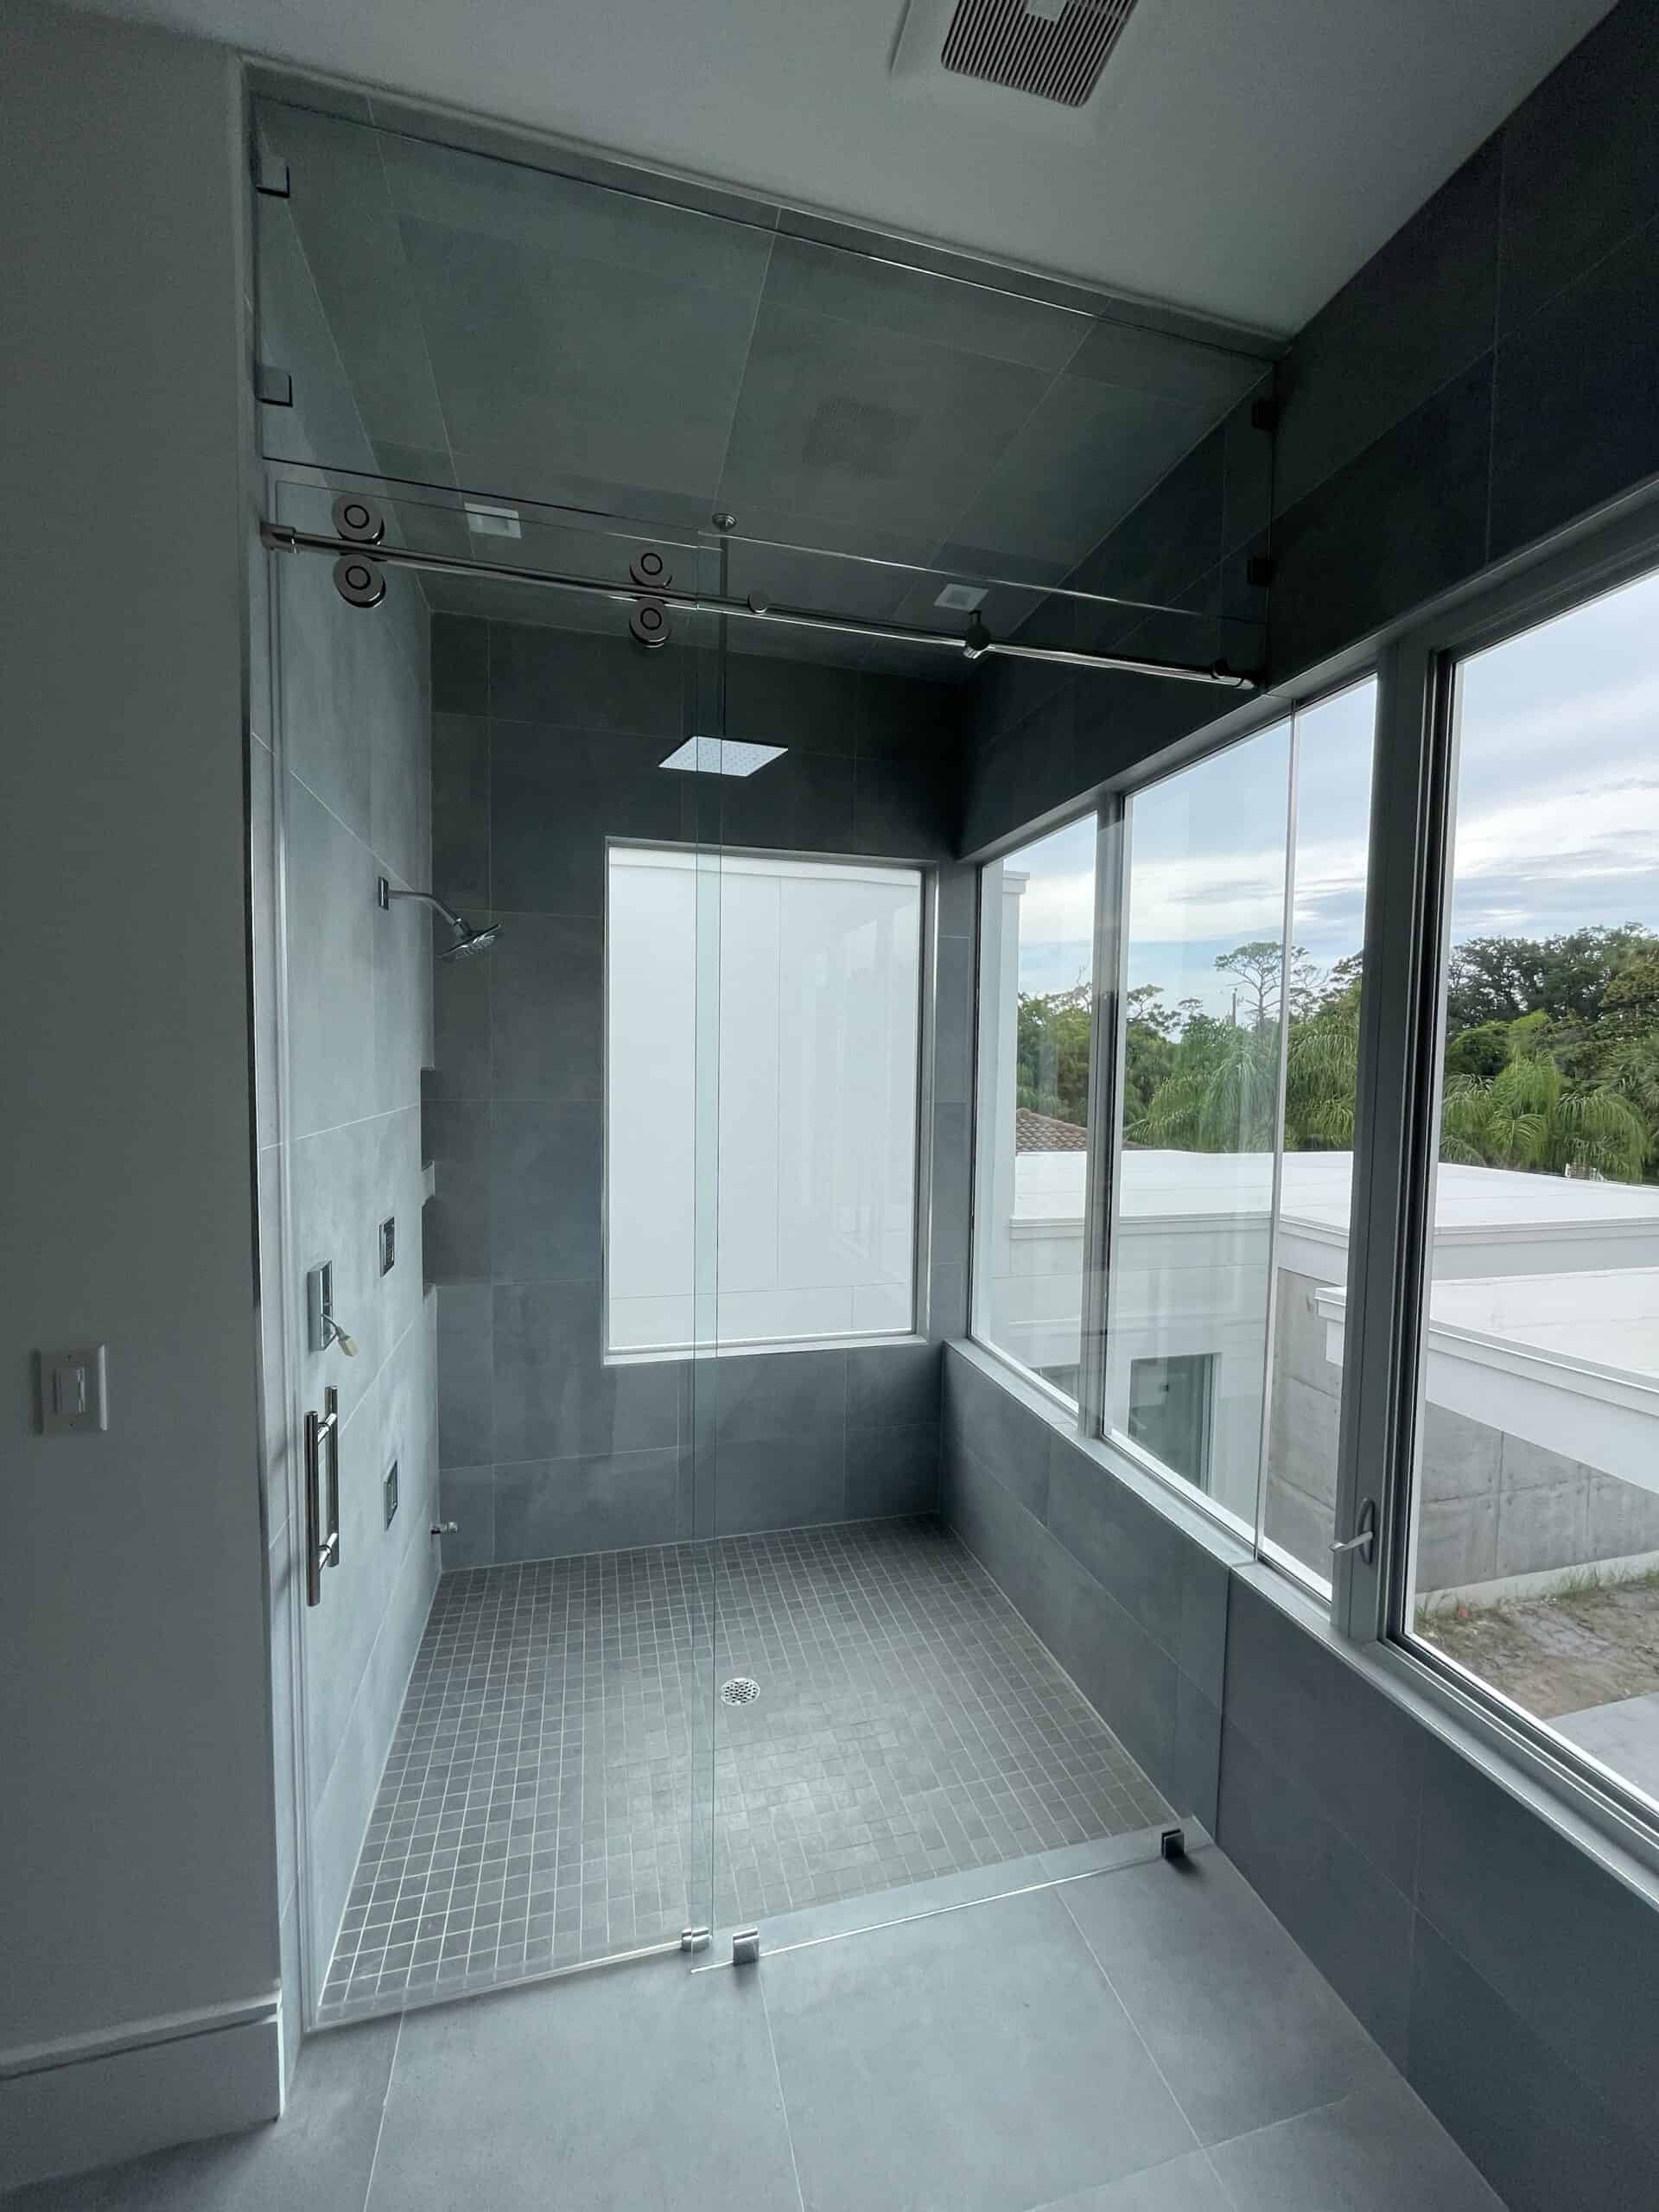 Full view of custom Cascade Series shower door in luxury bathroom from Aldora